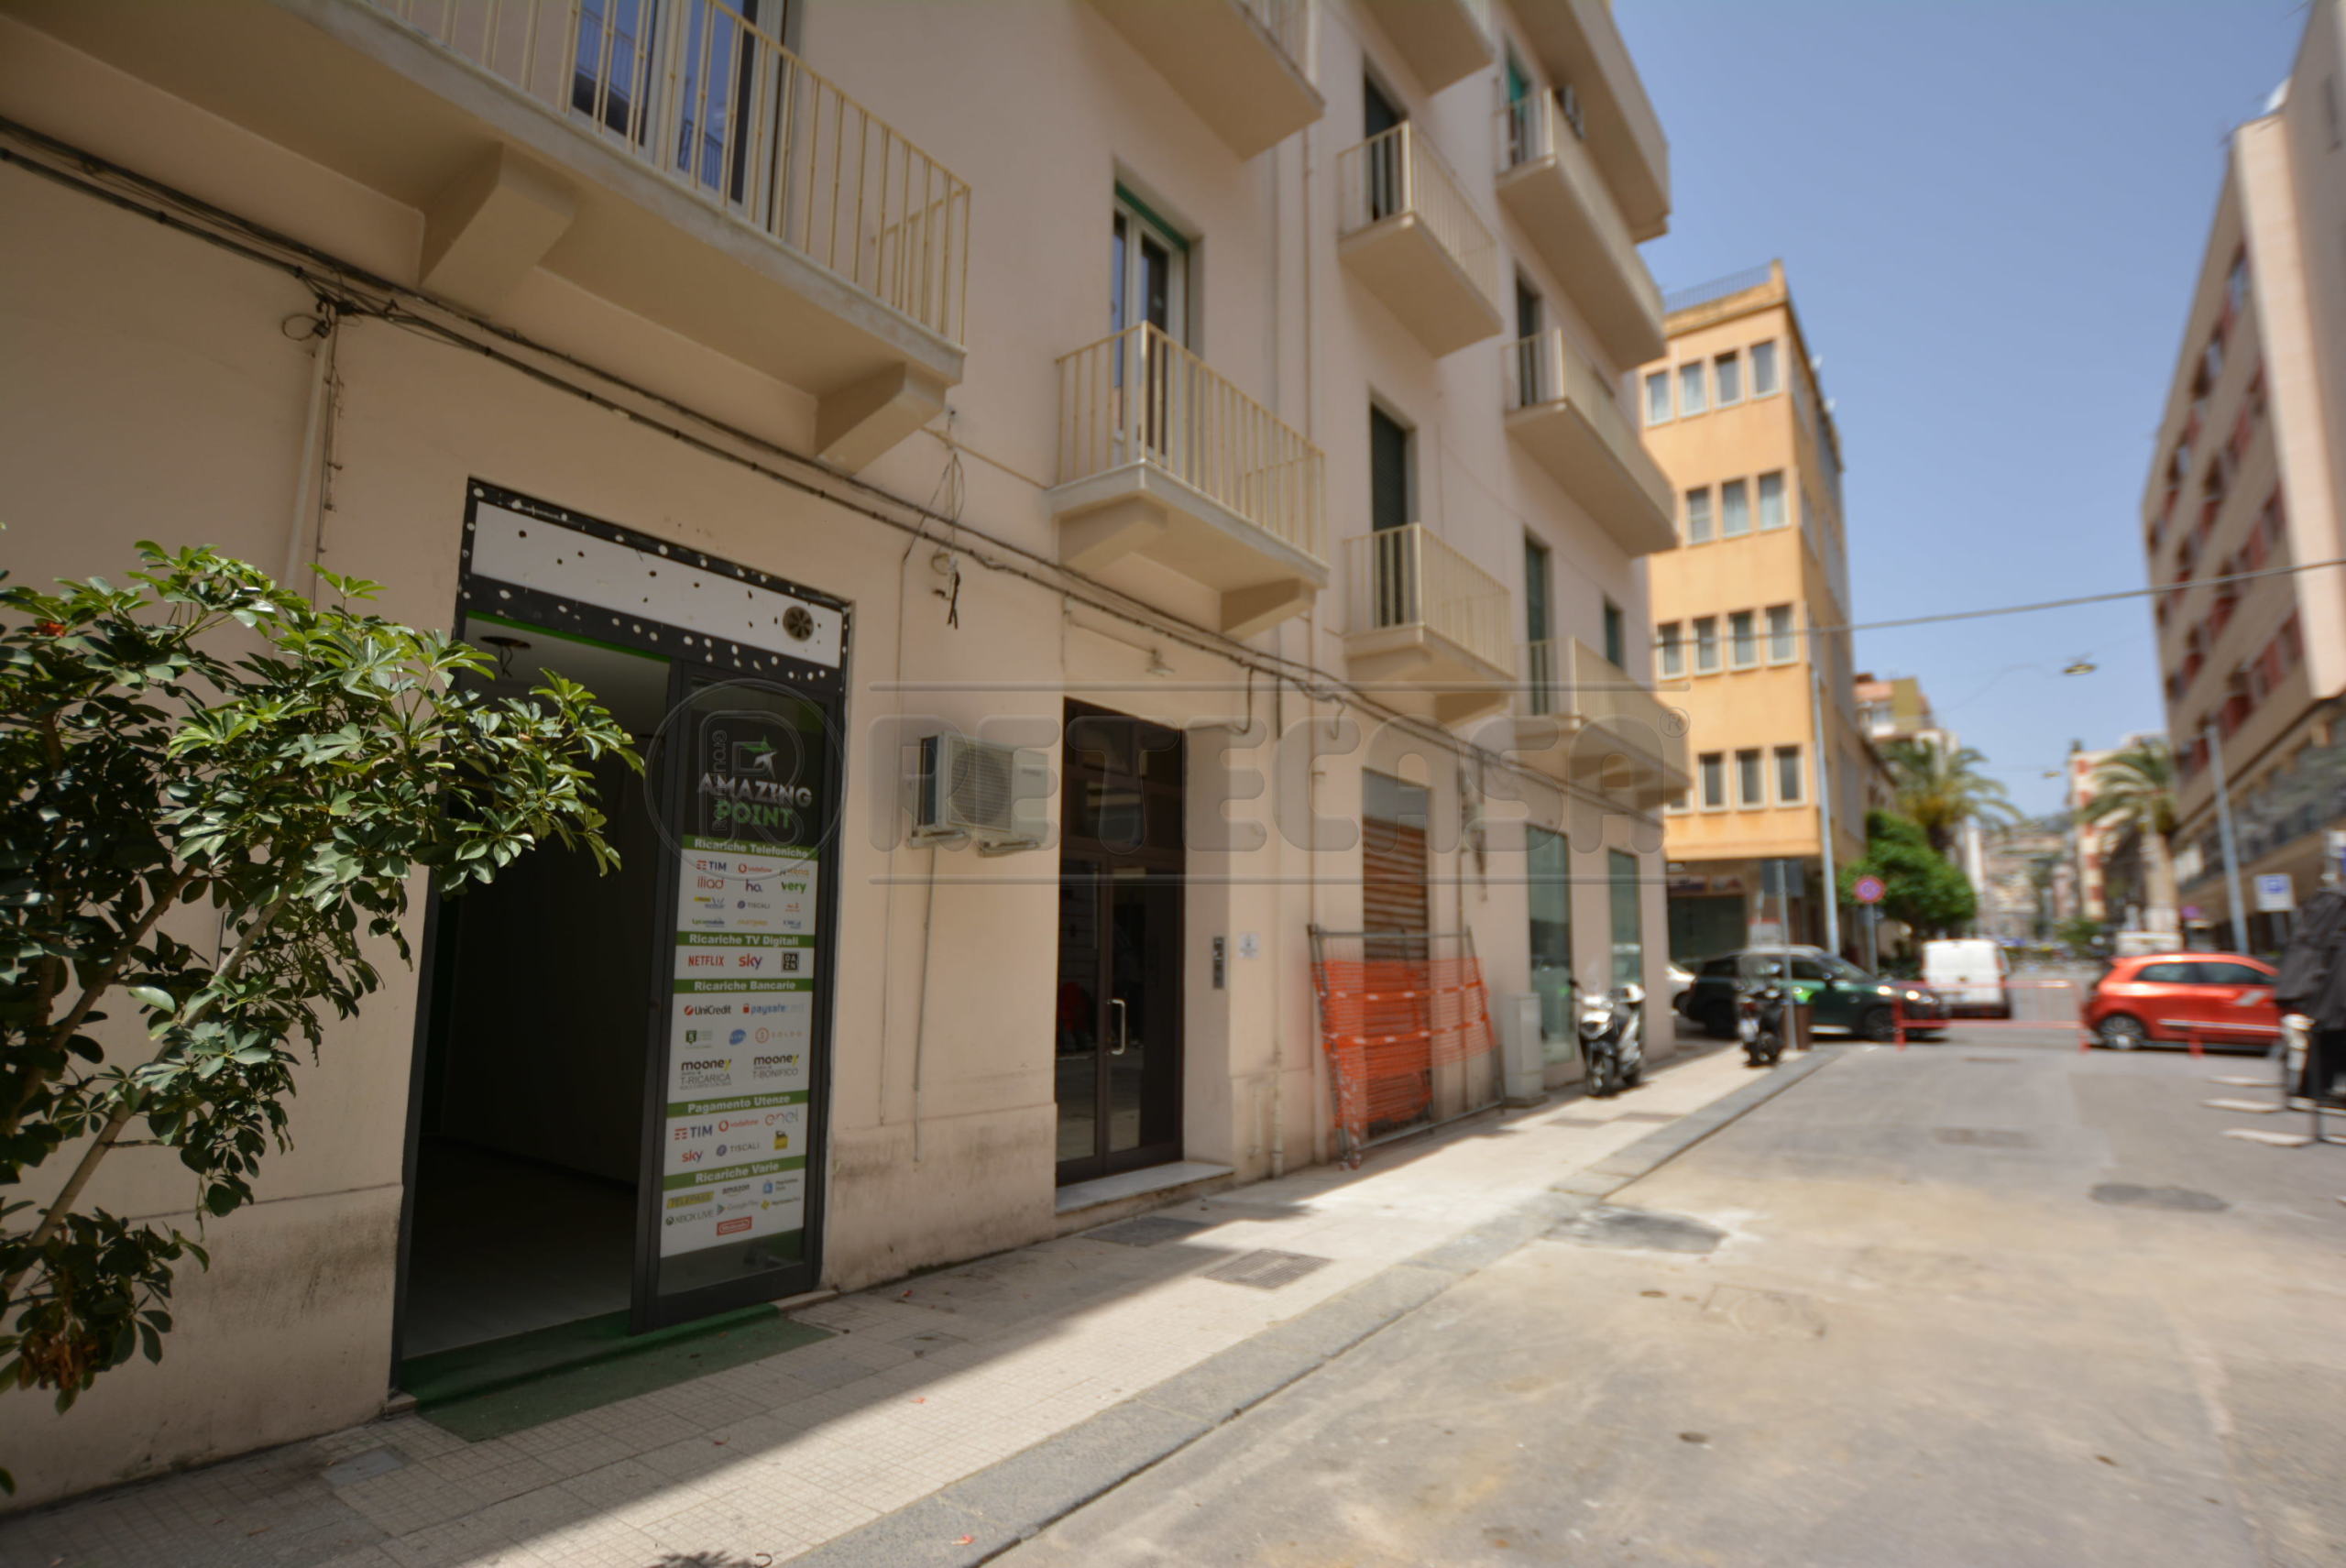 Locale commerciale in vendita in via camiciotti 25, Messina